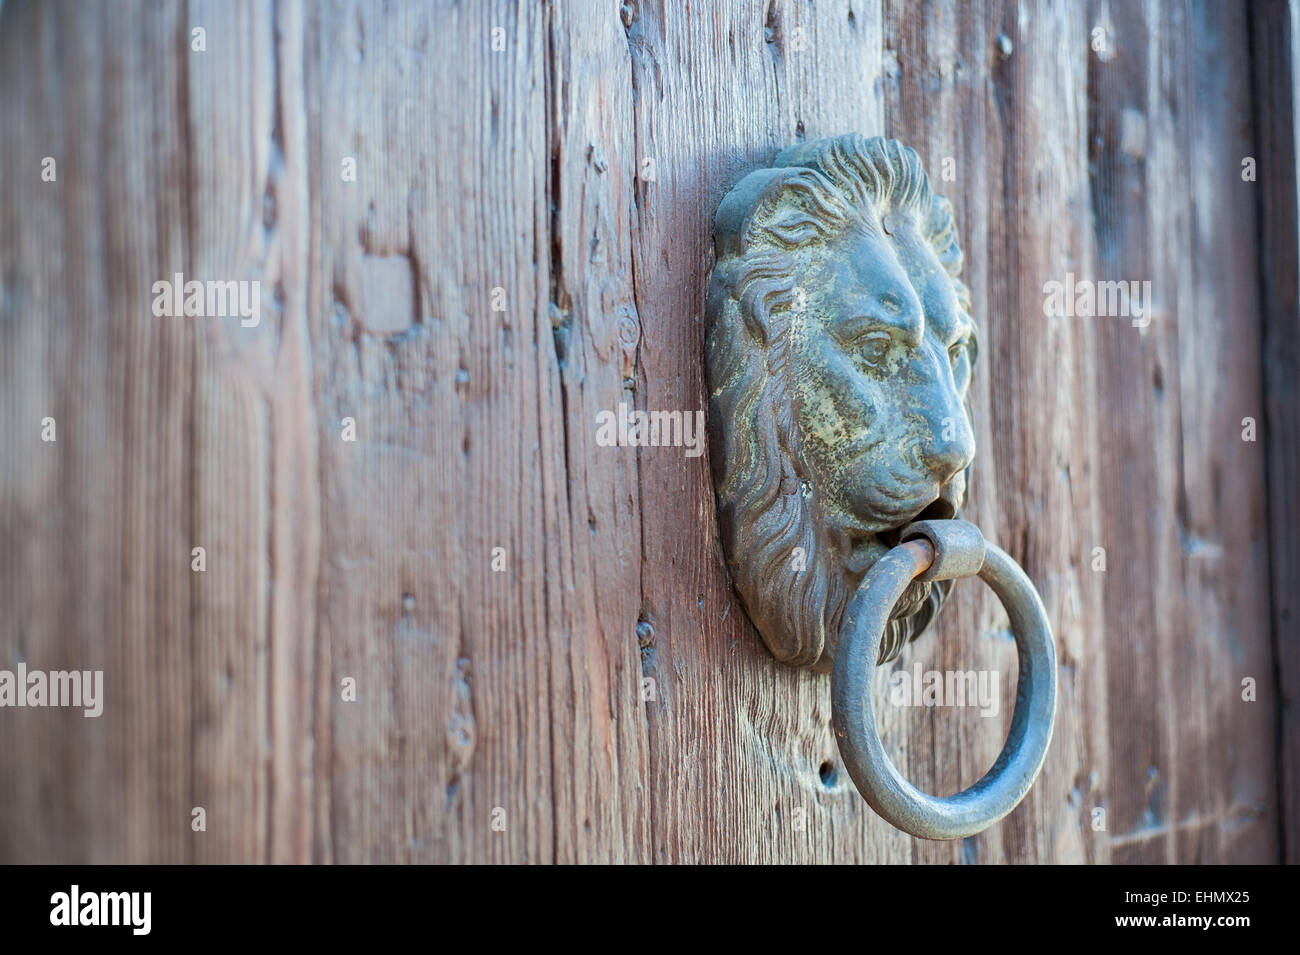 Doors with door knocker in the shape of lion head Stock Photo